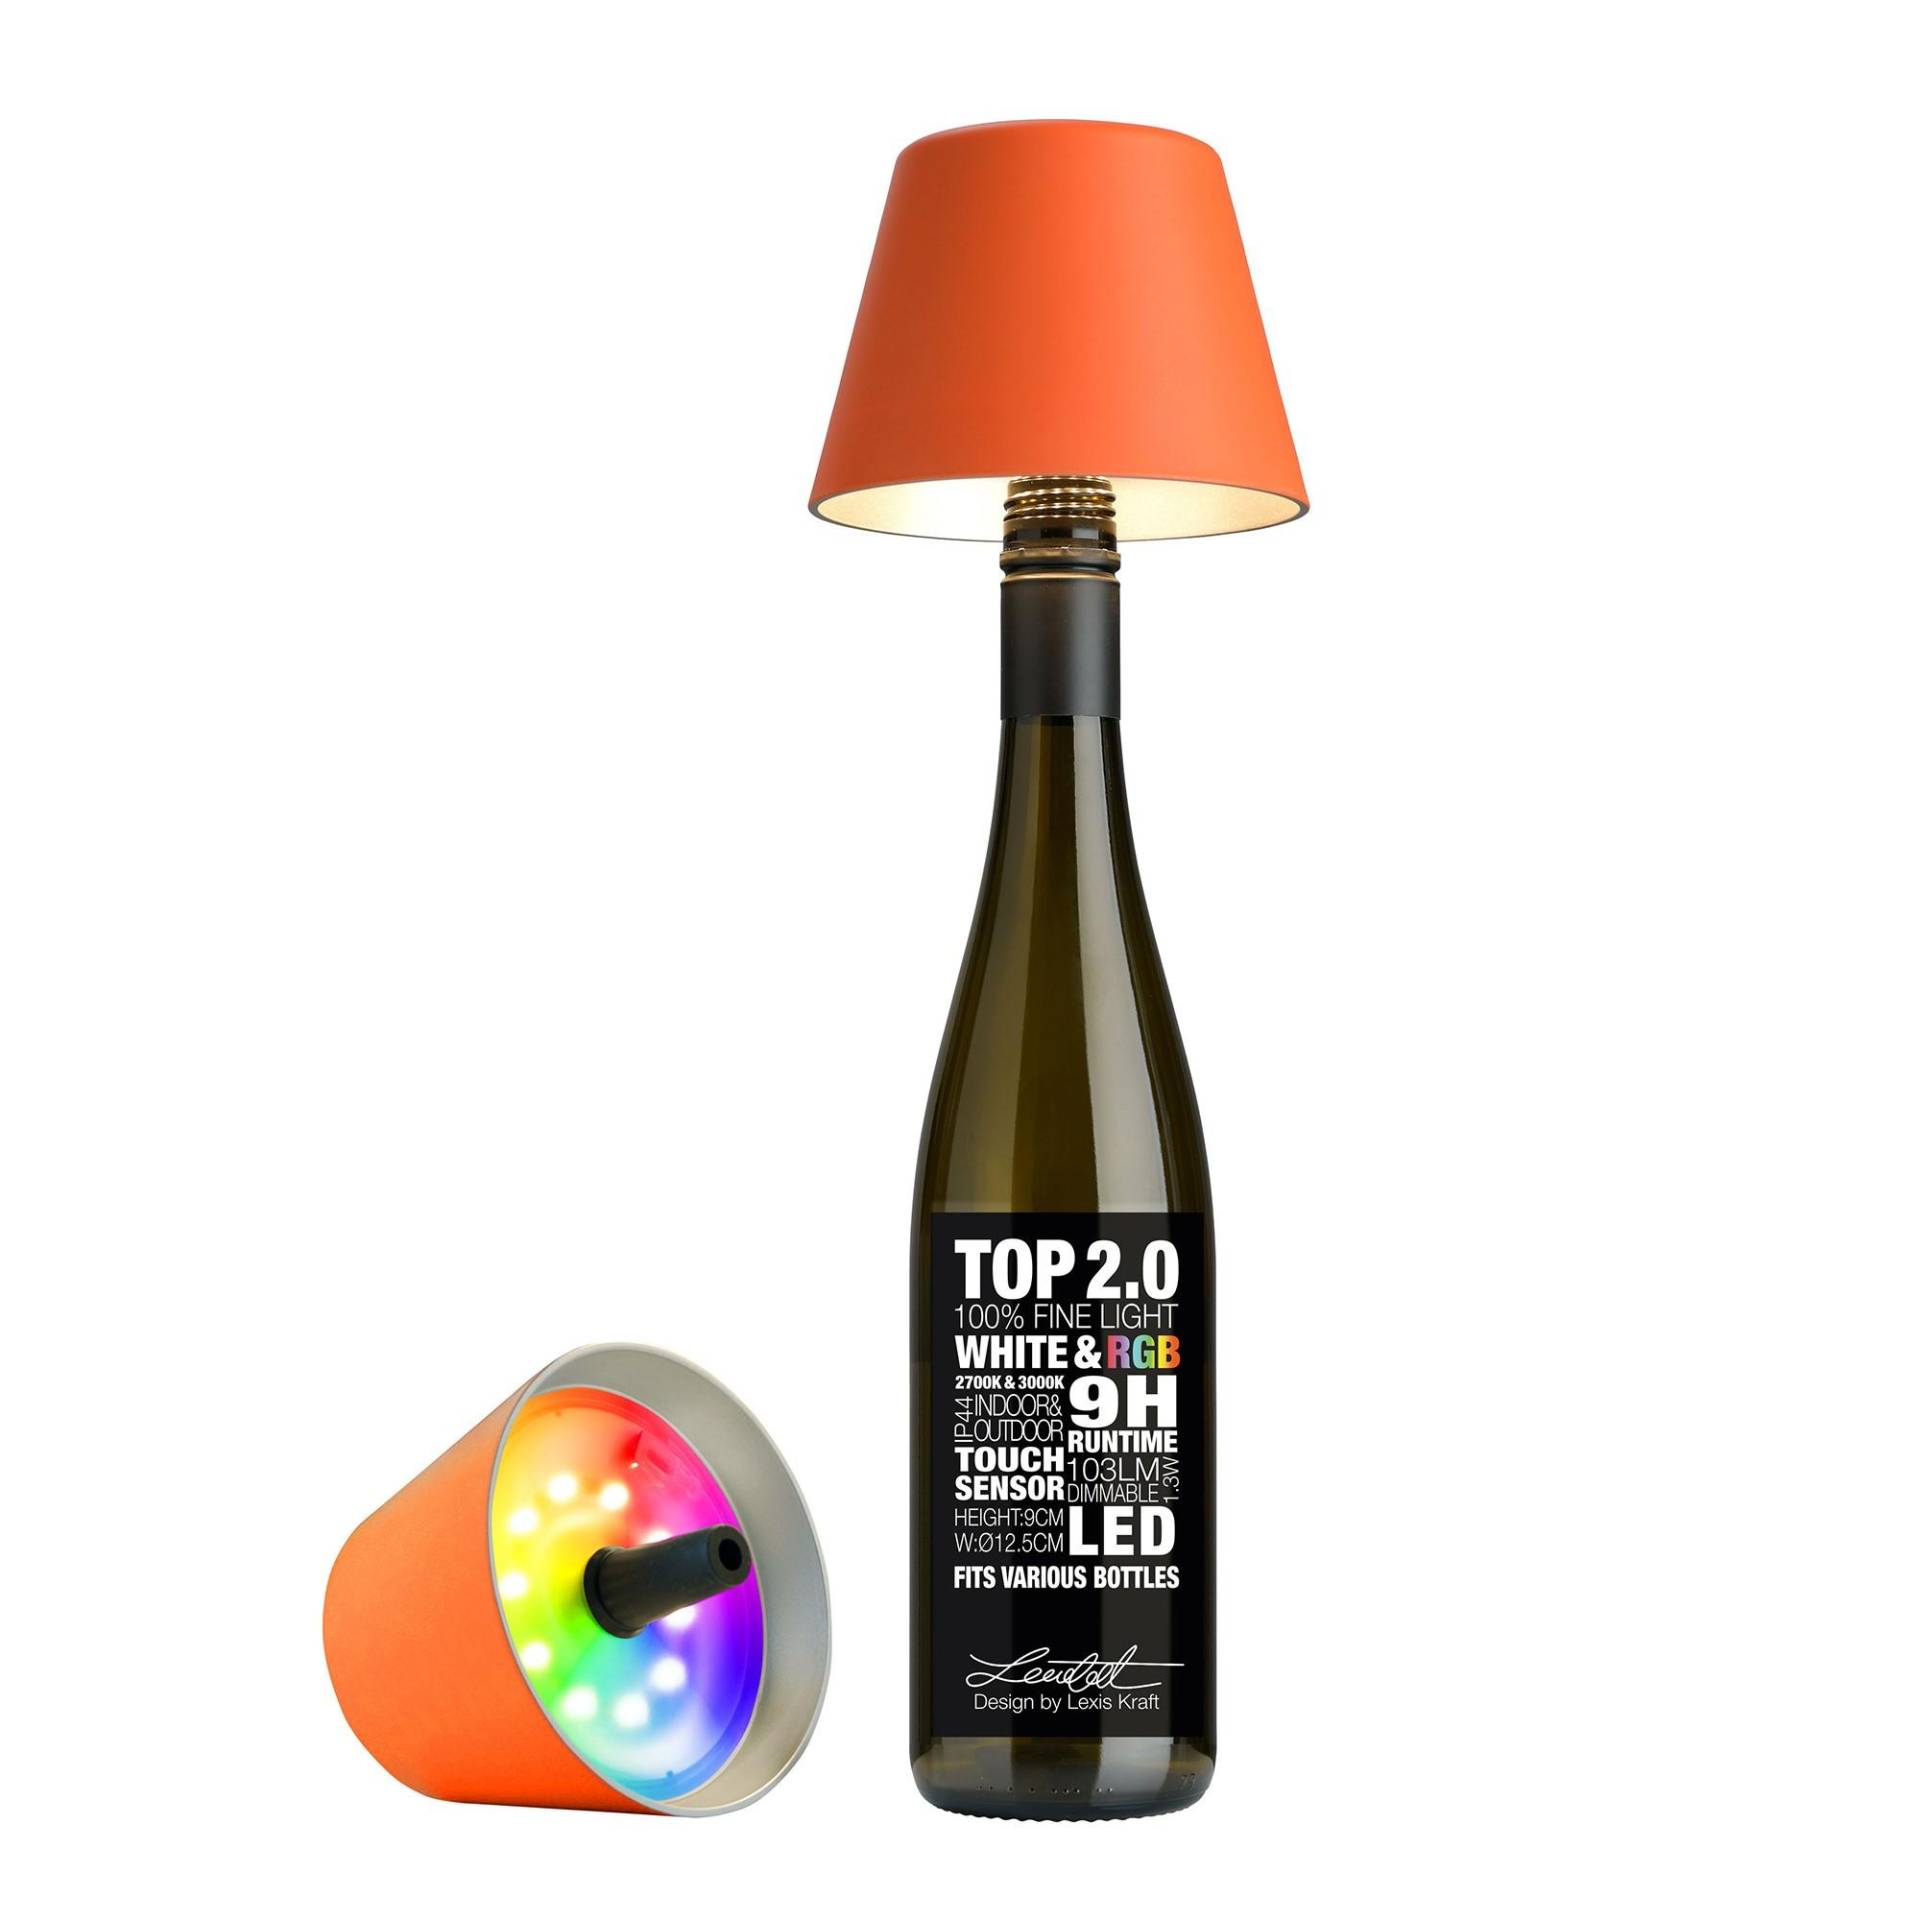 Top Lampe 2.0 Orange Unisex von Sompex